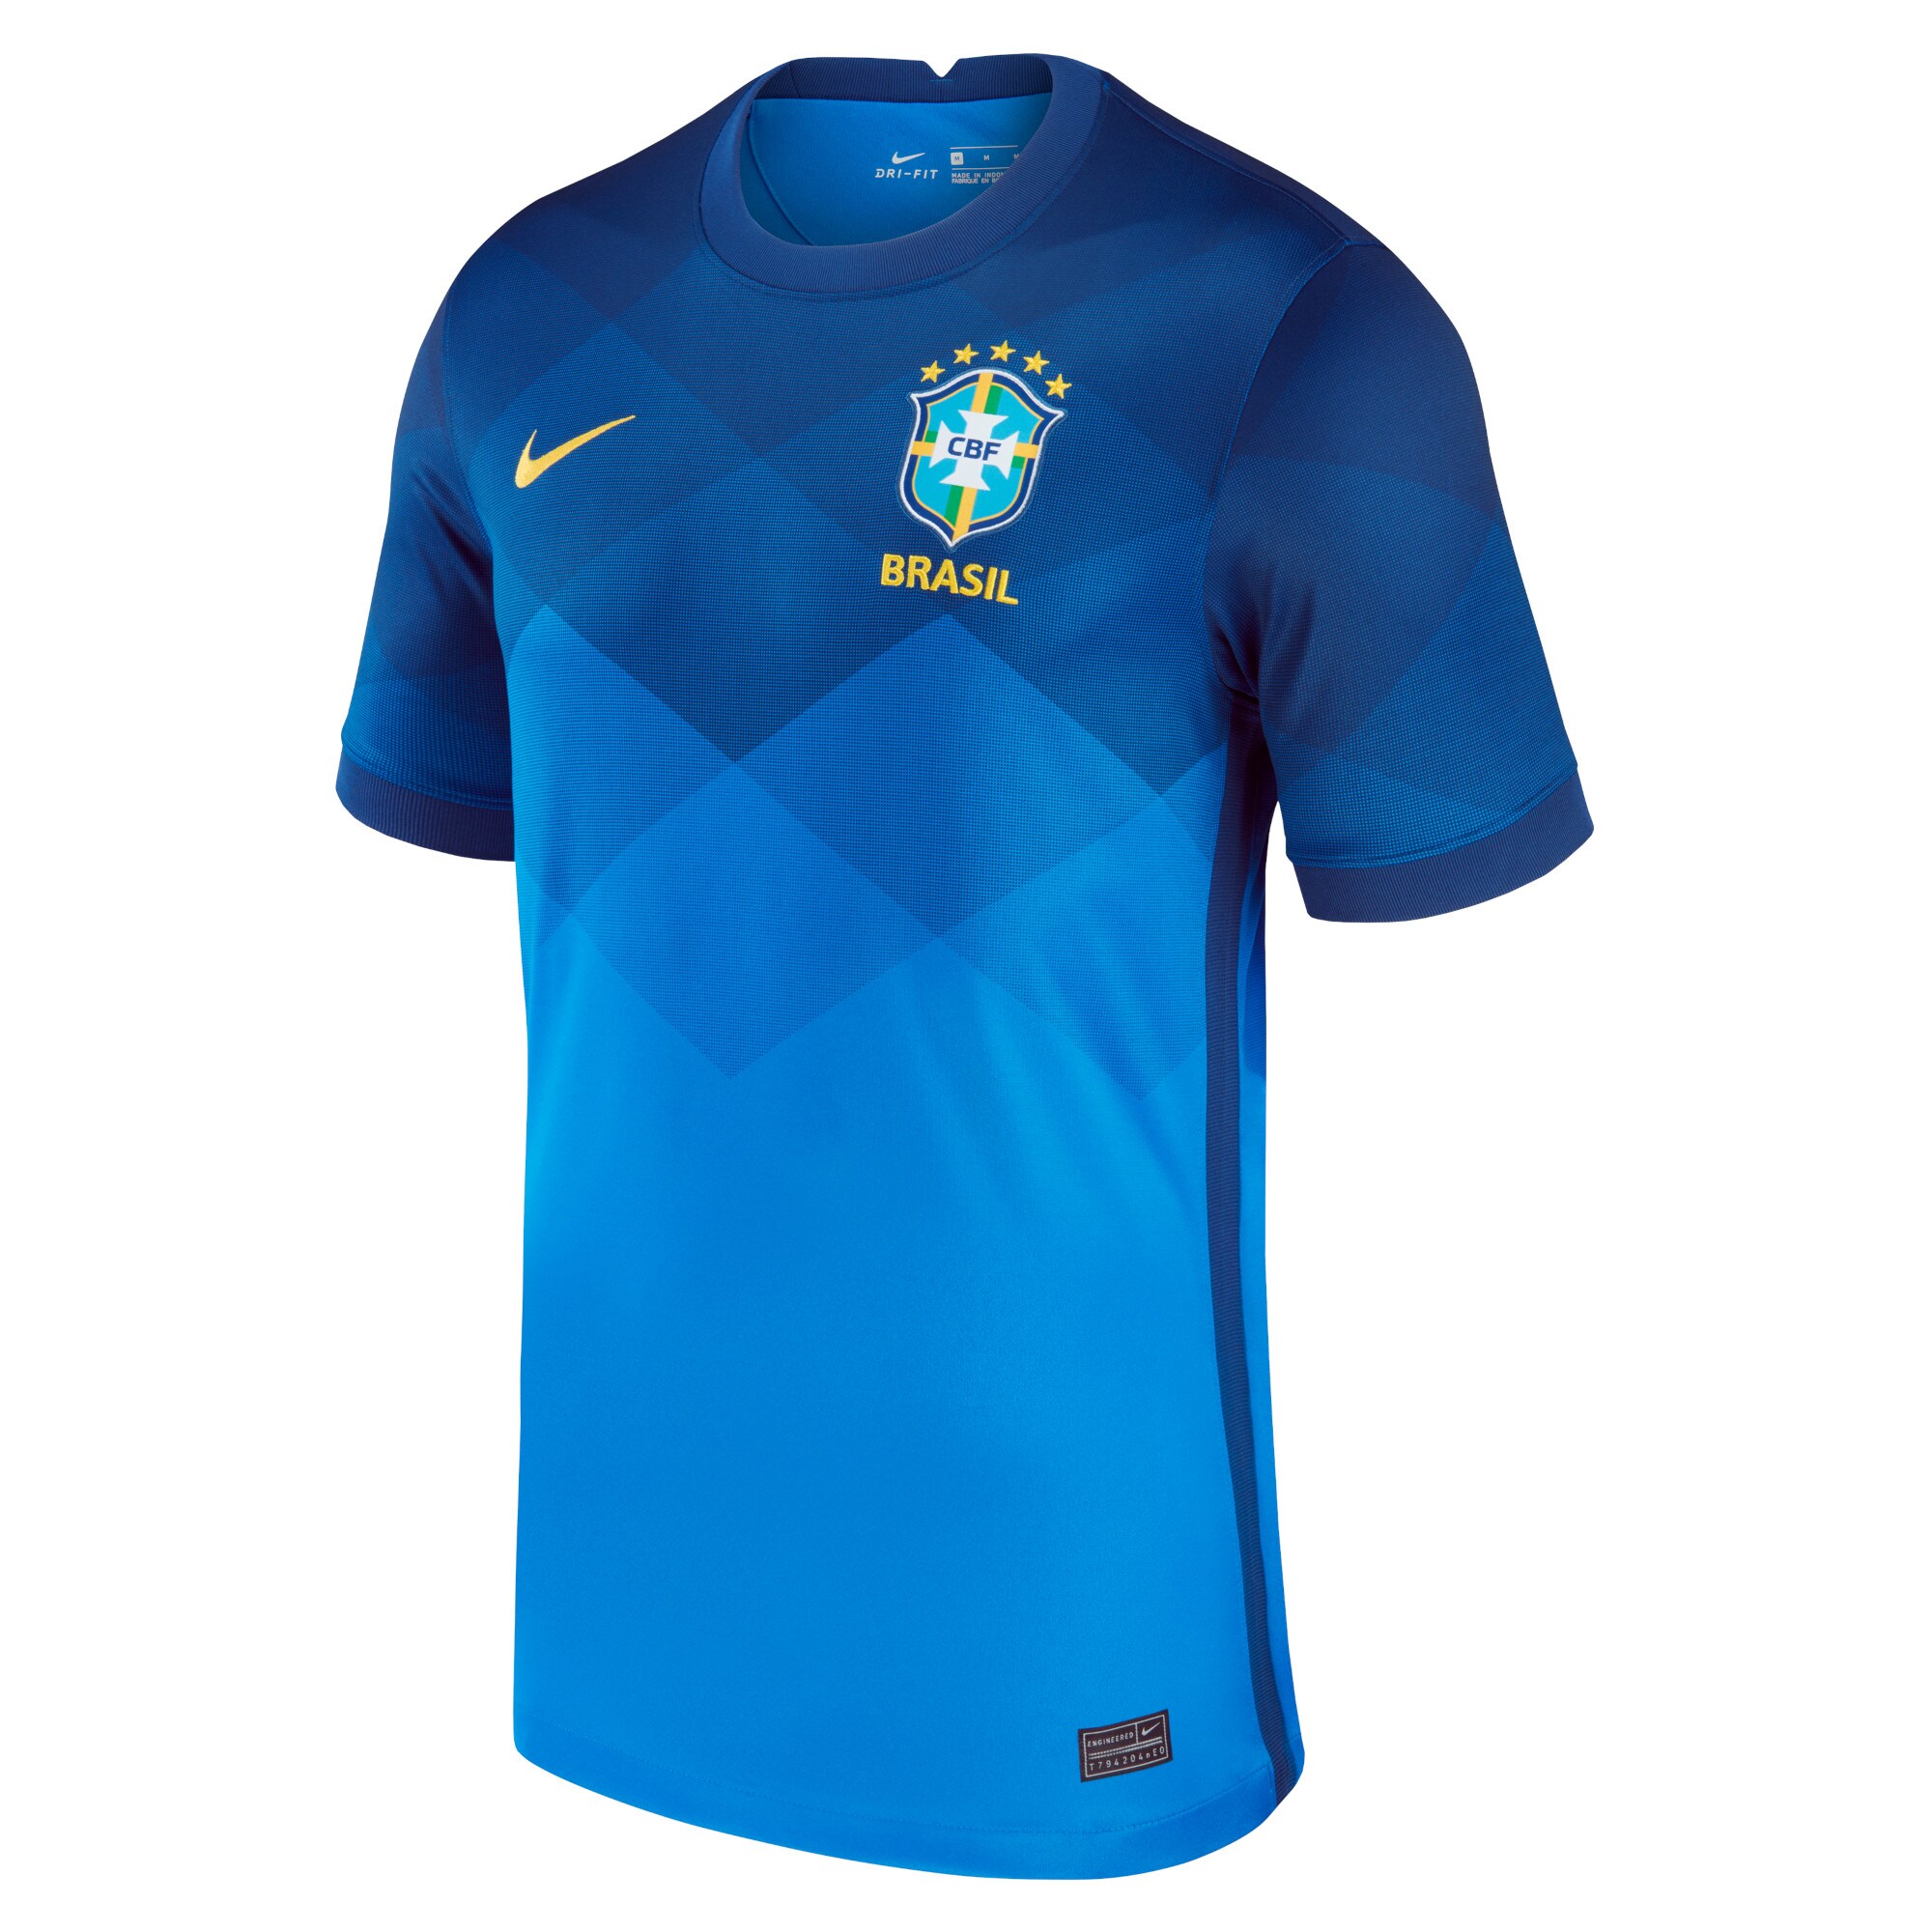 Adidas Brazil National Team 2020/21 Away Team Jersey